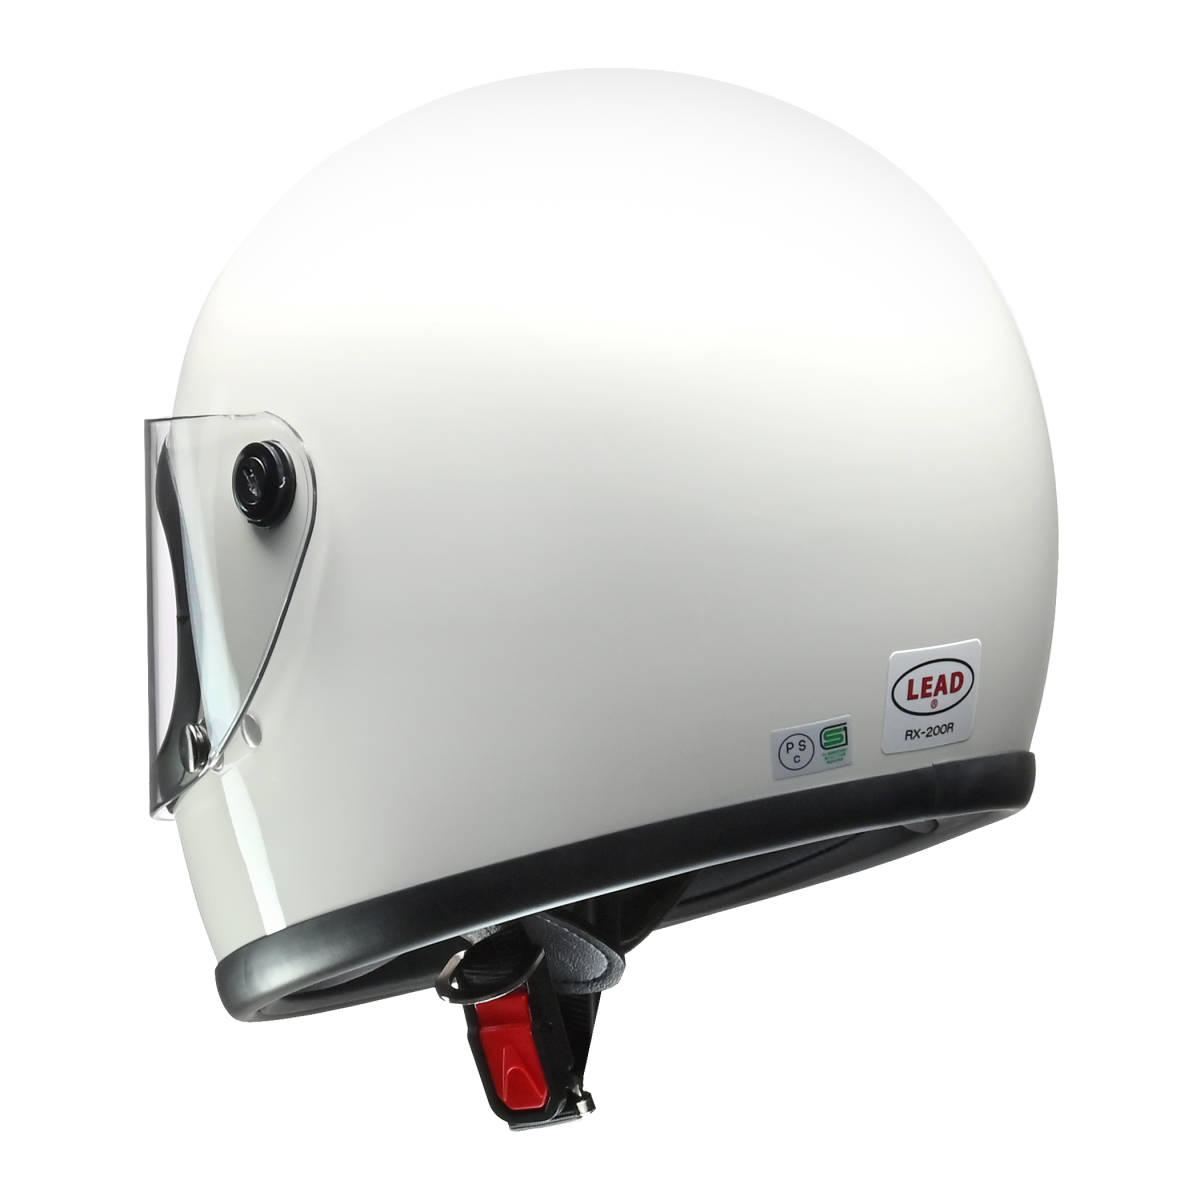 【在庫あり】【送料無料(★沖縄&離島は除く)】ビンテージヘルメット 復刻版モデル リード工業 LEAD RX-200R ホワイト フリーサイズ の画像3